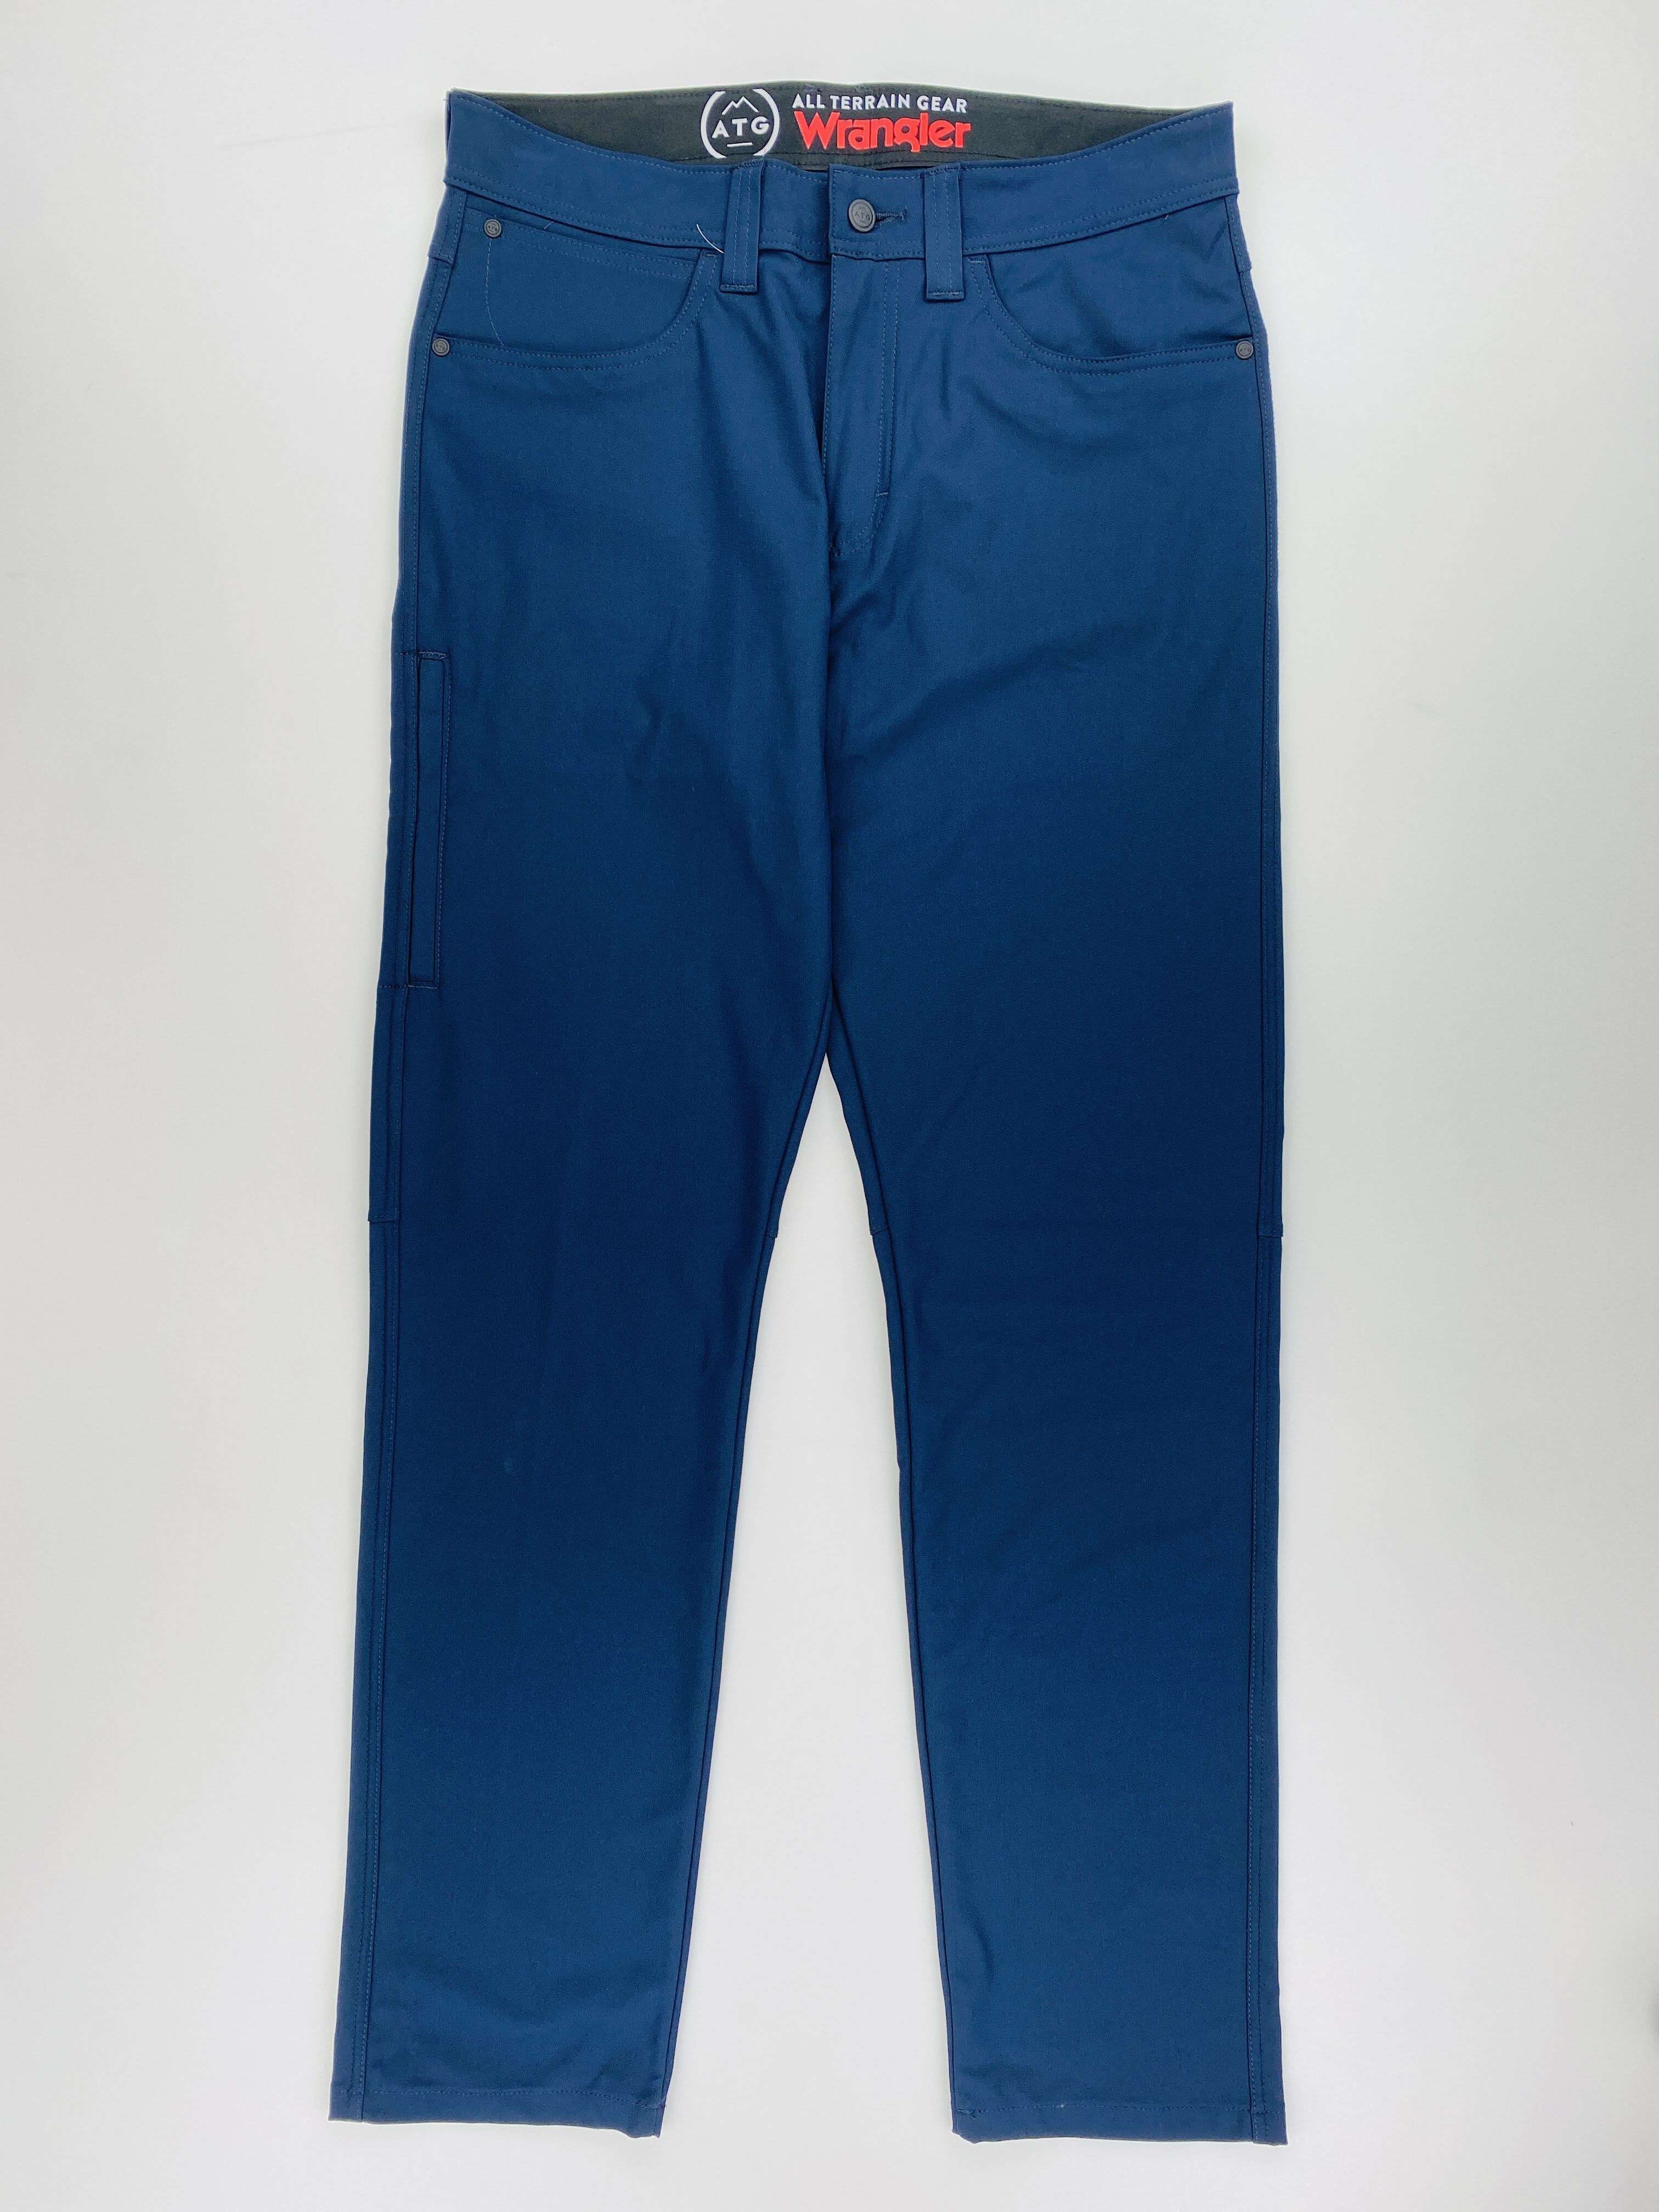 Wrangler Fwds 5 Pocket Pants - Second Hand Wanderhose - Herren - Blau - US 32 | Hardloop